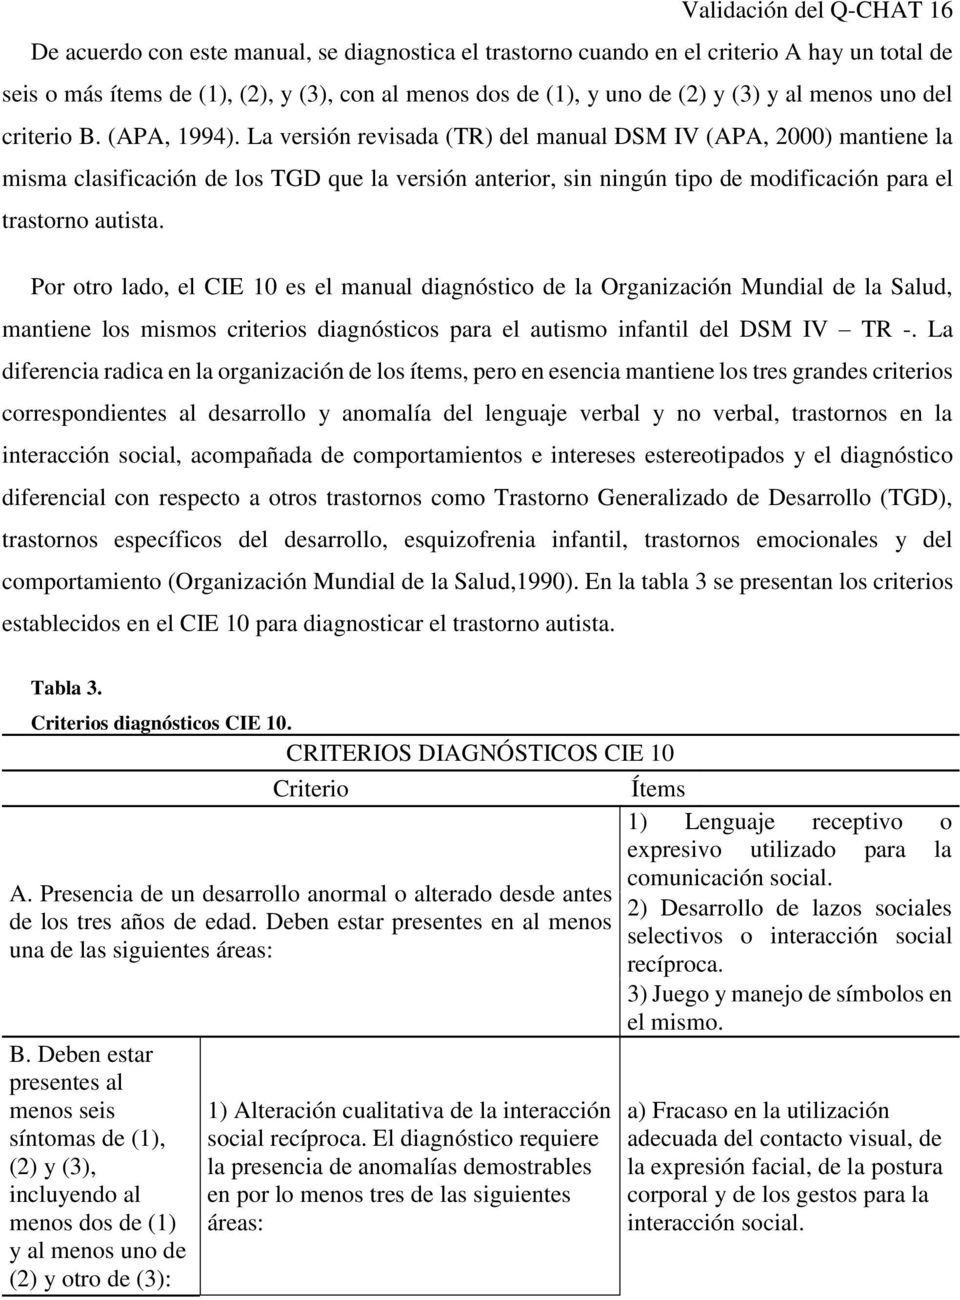 La versión revisada (TR) del manual DSM IV (APA, 2000) mantiene la misma clasificación de los TGD que la versión anterior, sin ningún tipo de modificación para el trastorno autista.